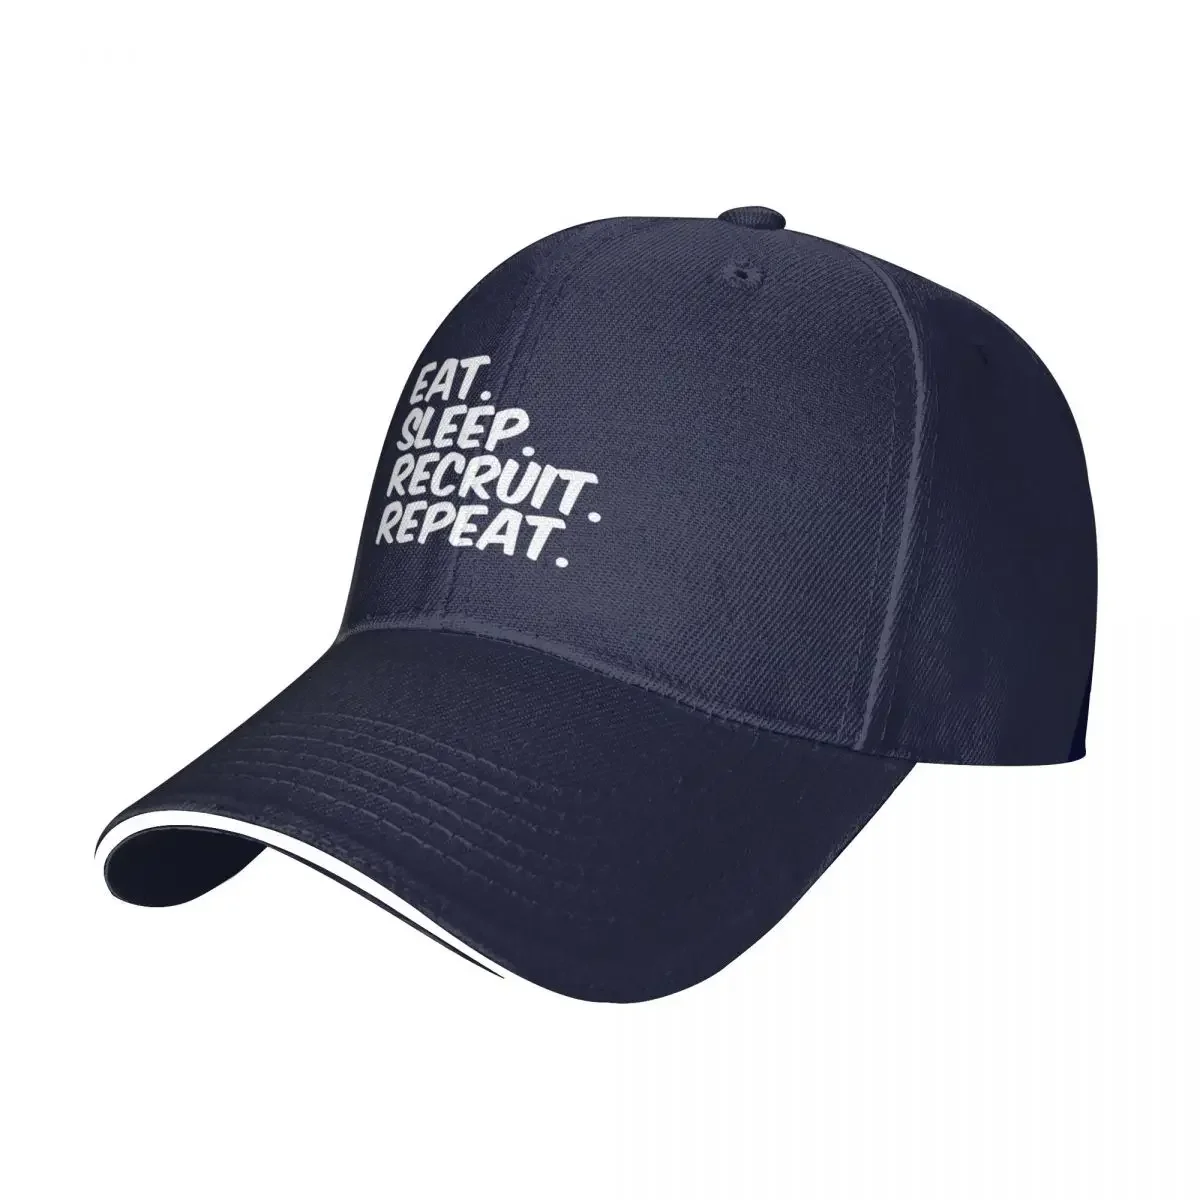 

Eat Sleep Recruit Repeat Cap Baseball Cap snapback cap sunhat Hat male Women's